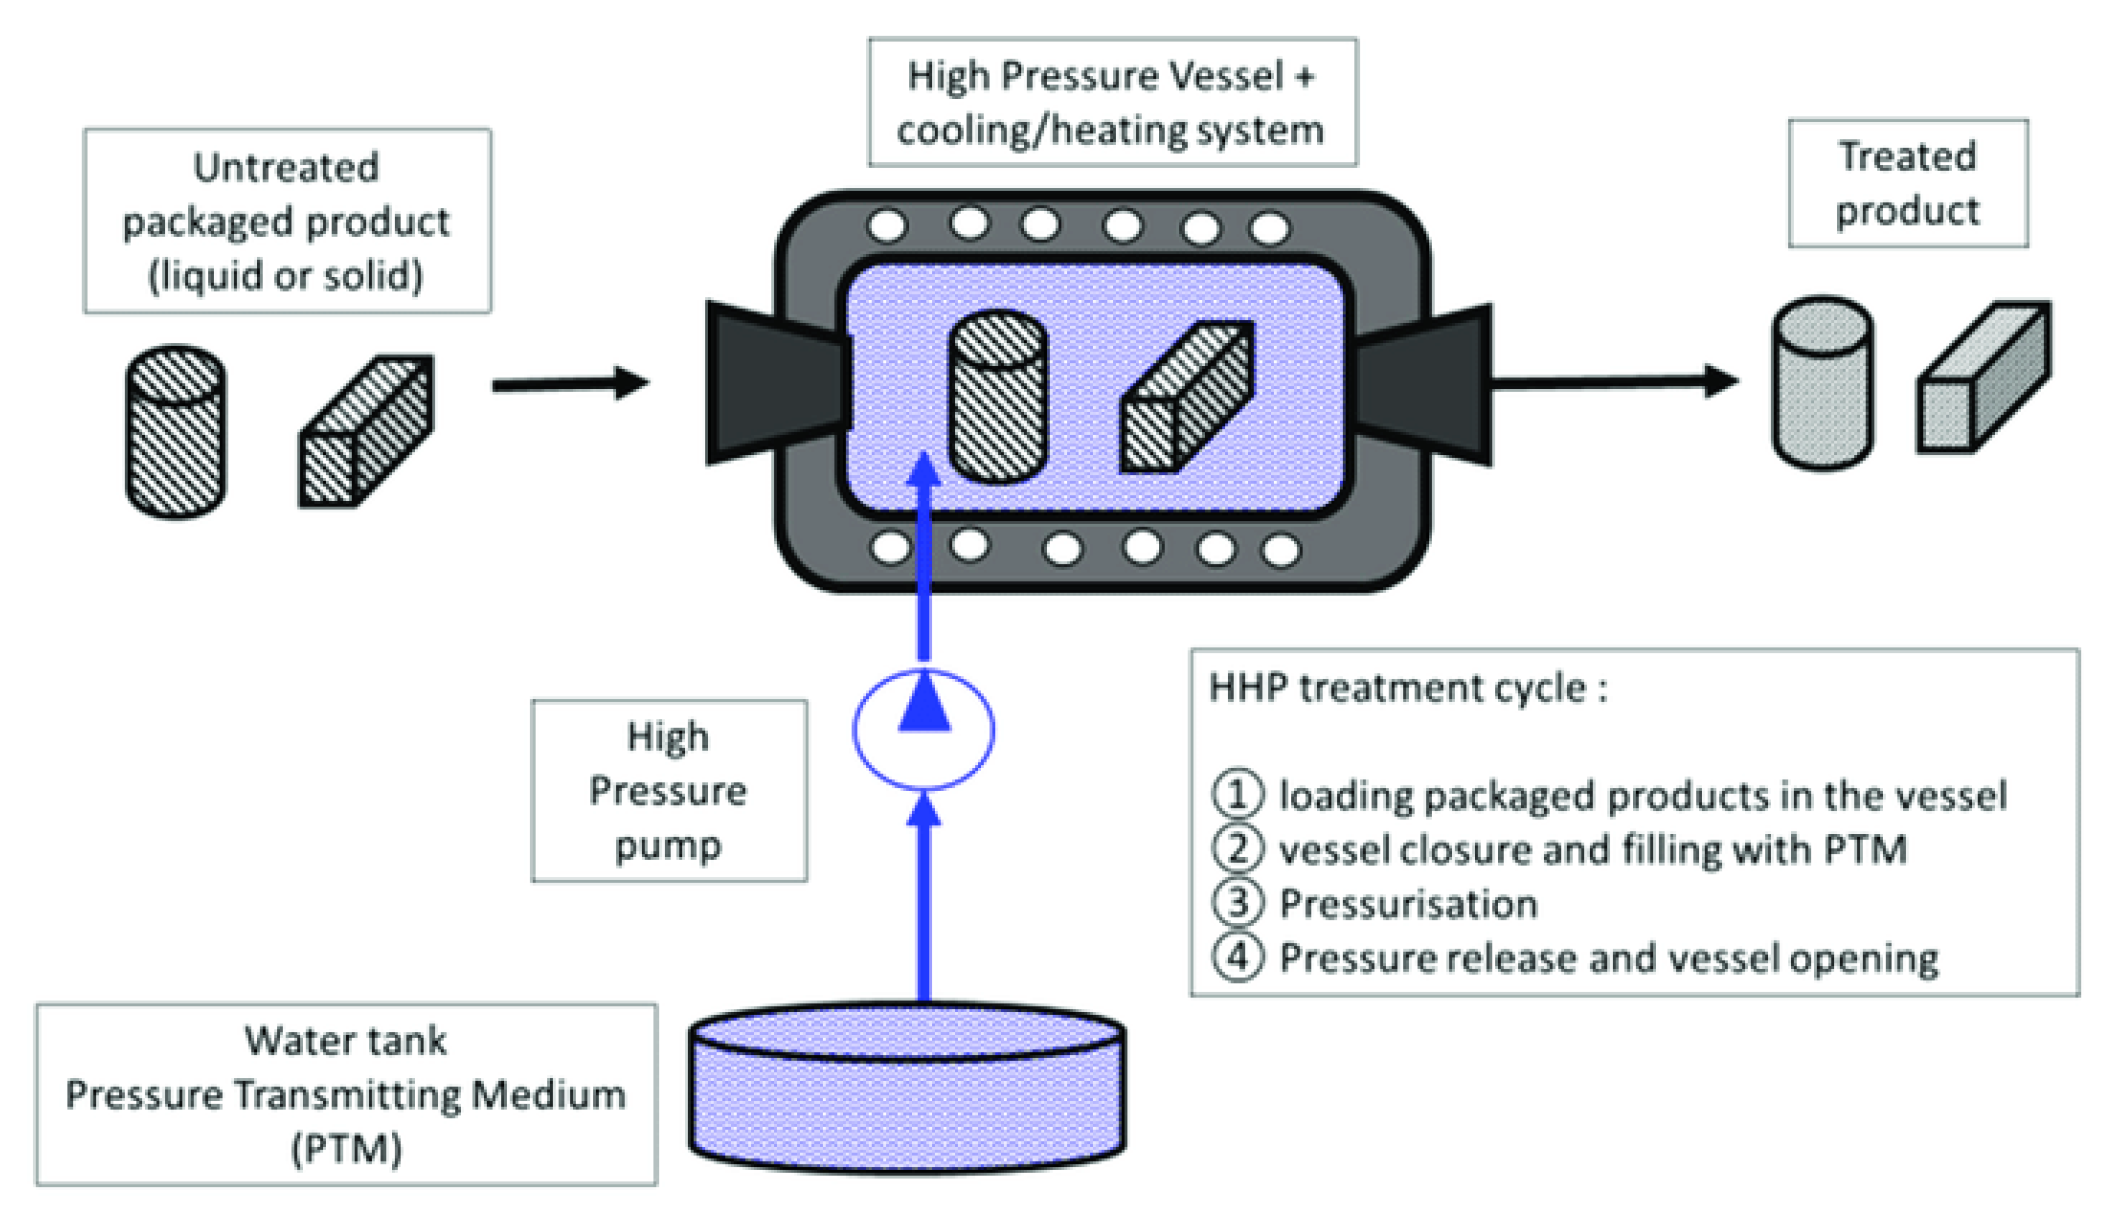 Sea Fishing Incubator Mini Tumbling Box Light Can Be Used In New